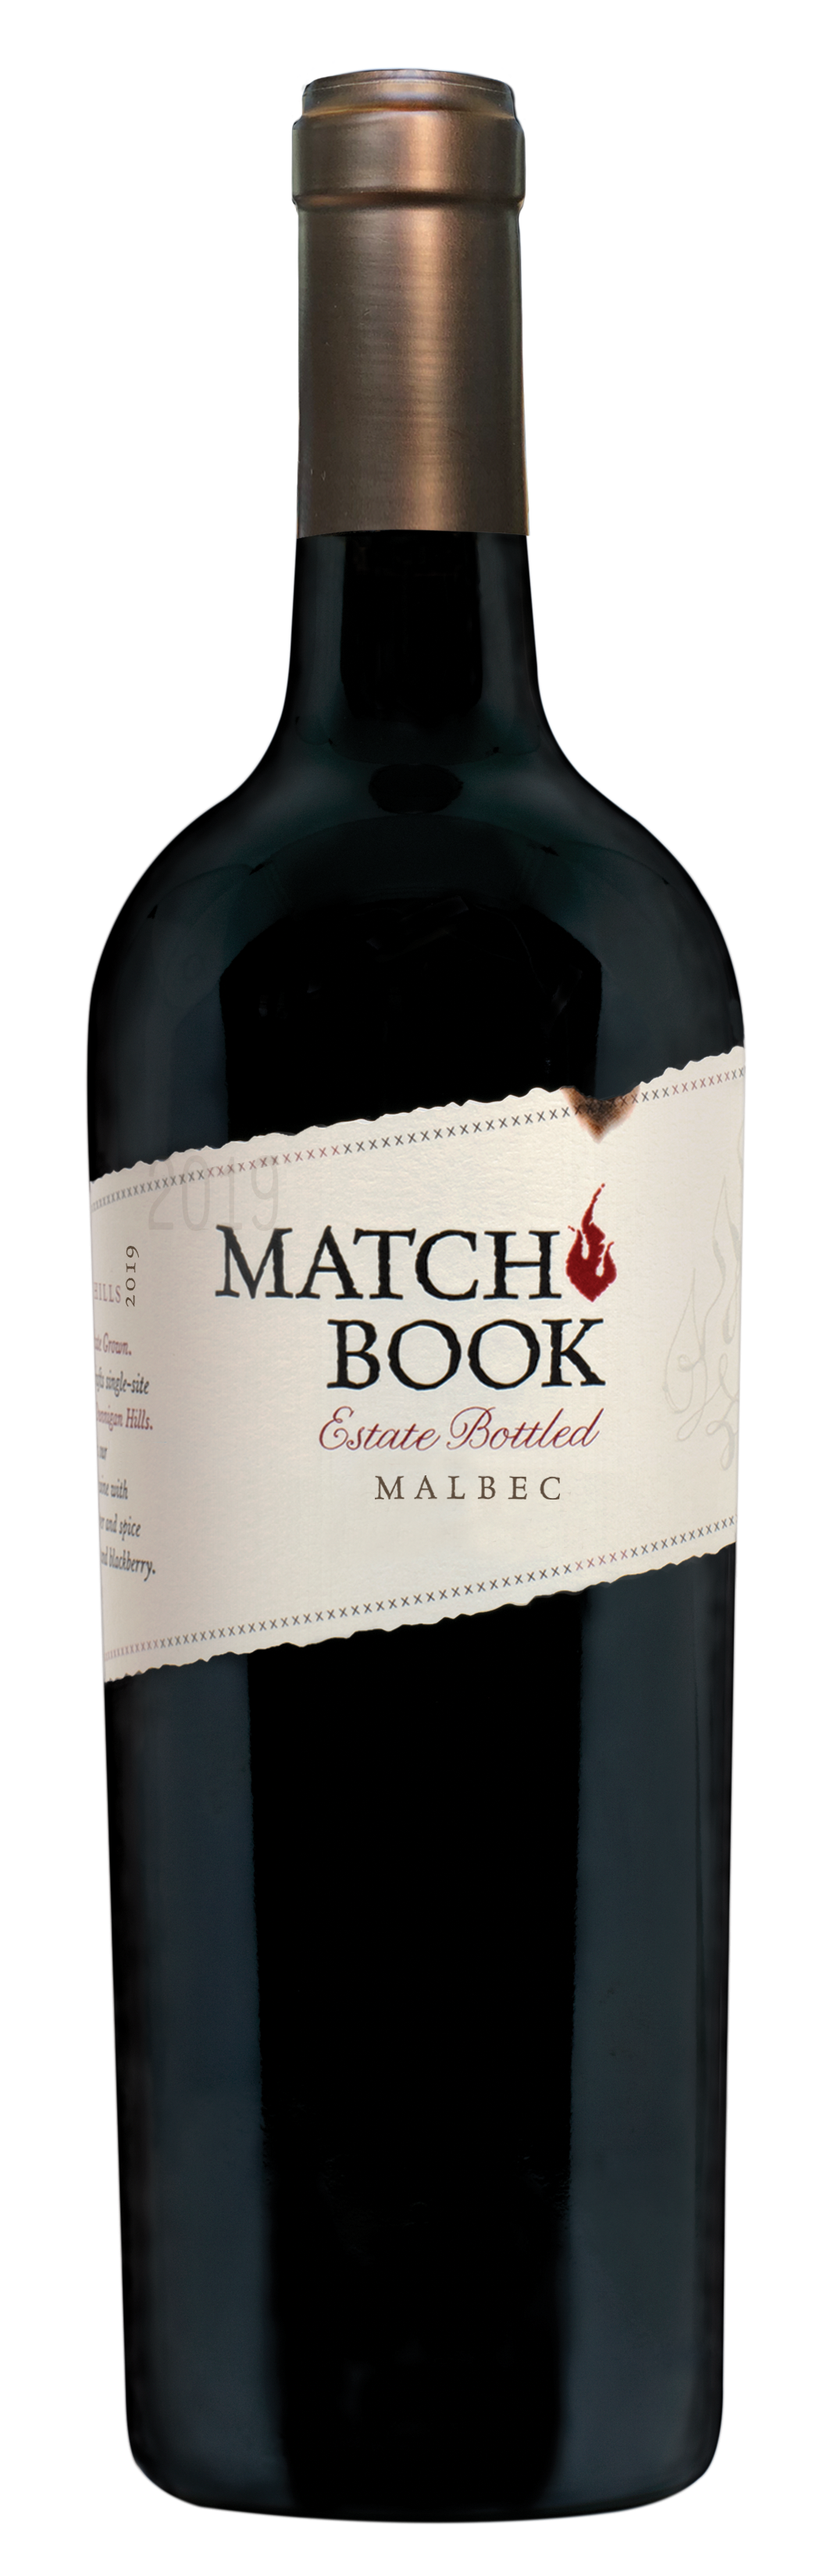 Product Image for 2019 Matchbook Estate Bottled Malbec